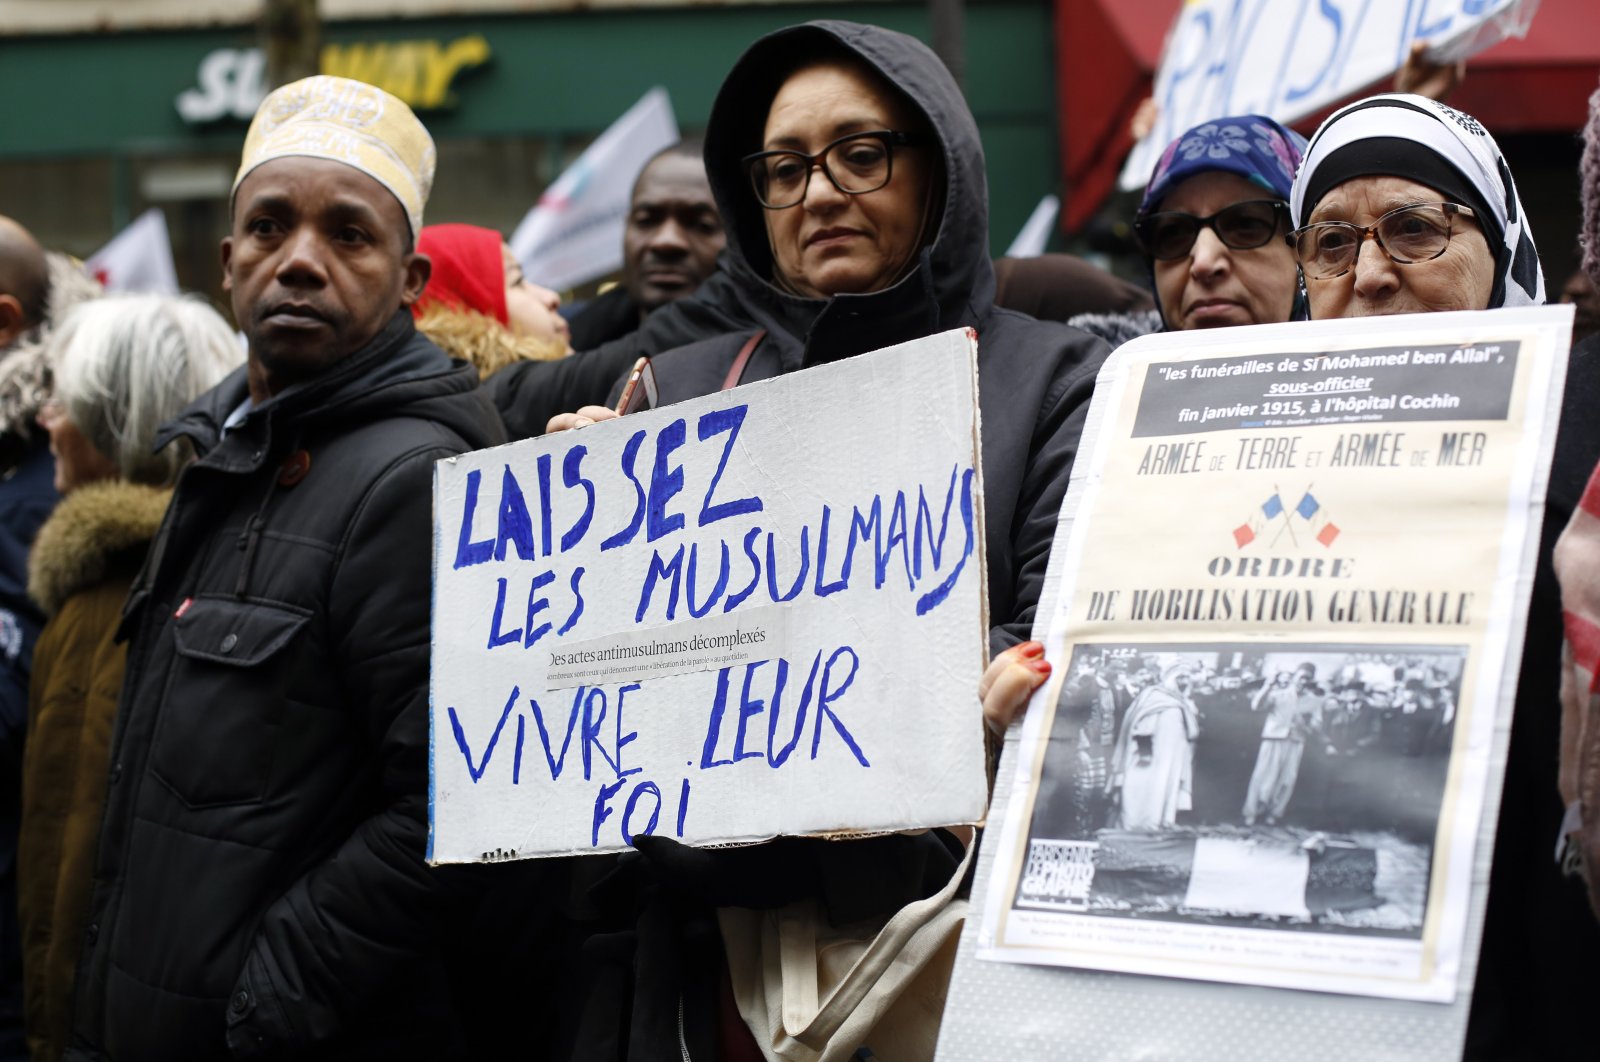 Rapora göre İslamofobi Avrupa’da kurumsallaşıyor